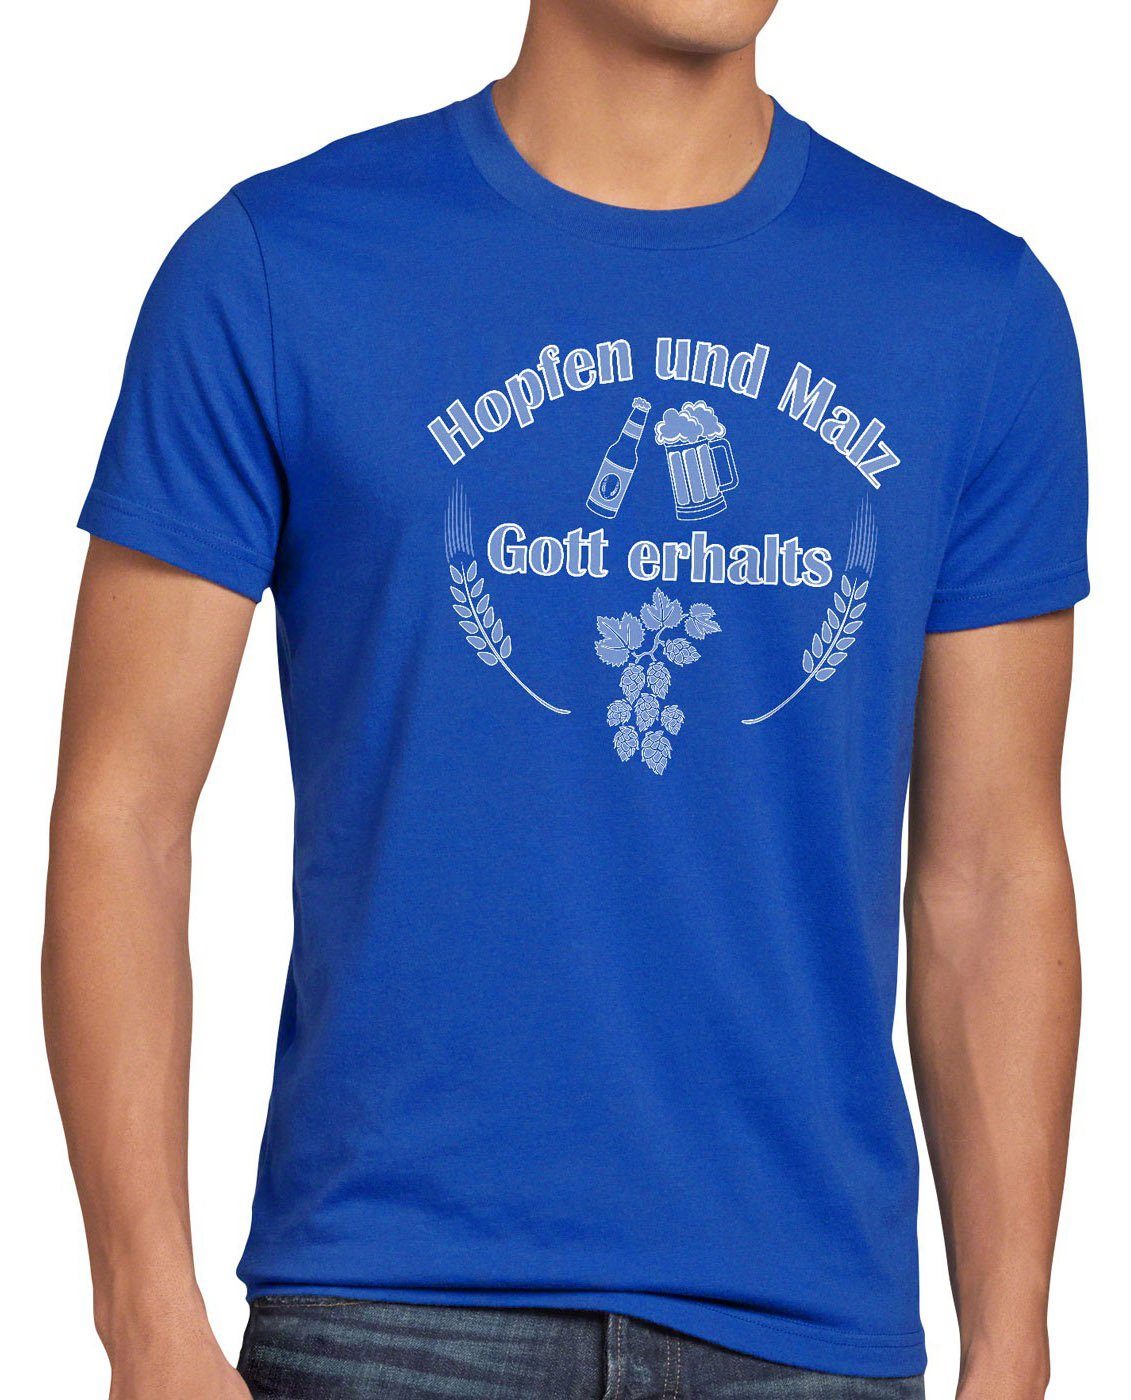 style3 Print-Shirt Herren T-Shirt Hopfen und Malz Gott erhalts Fun Funshirt Bier Spruchshirt Spruch blau